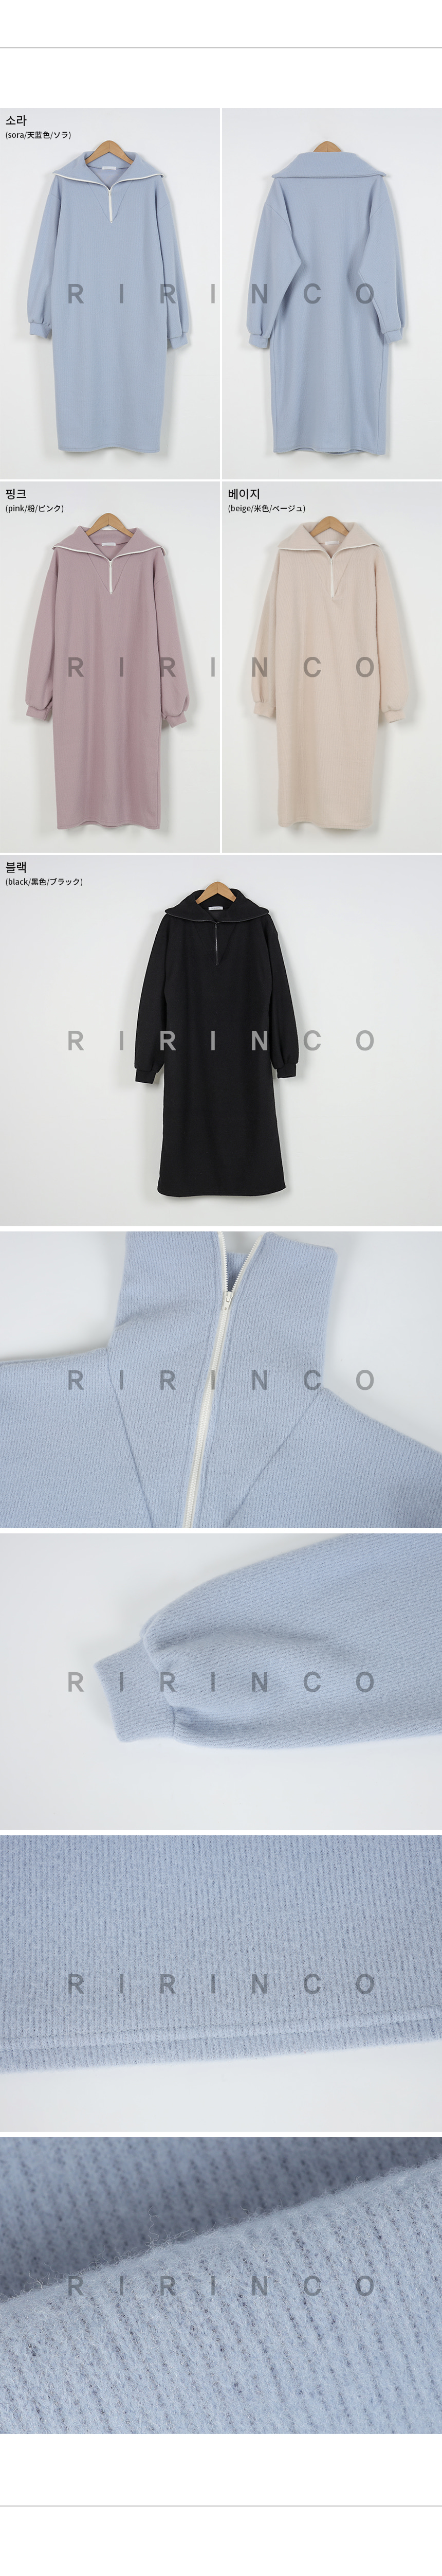 RIRINCO 表起毛セーラーカラーロングワンピース